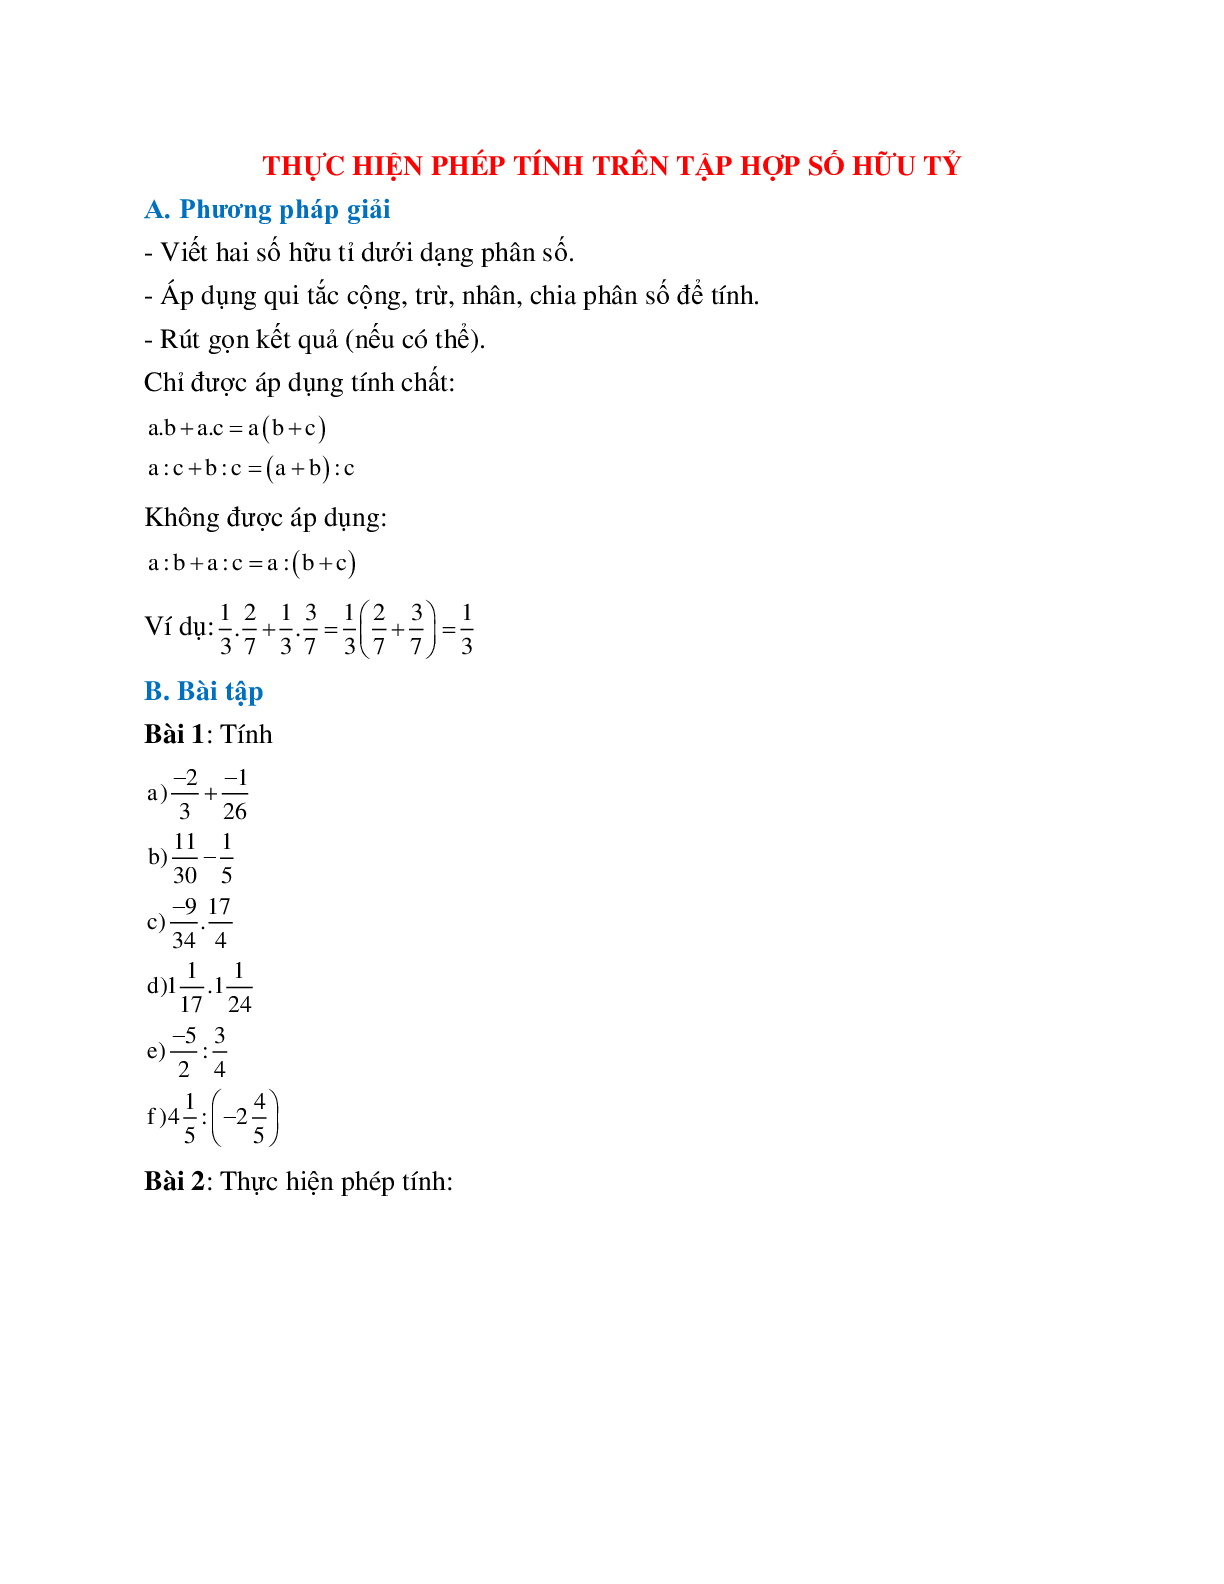 Cách giải Thực hiện phép tính trên tập hợp số hữu tỉ (trang 1)